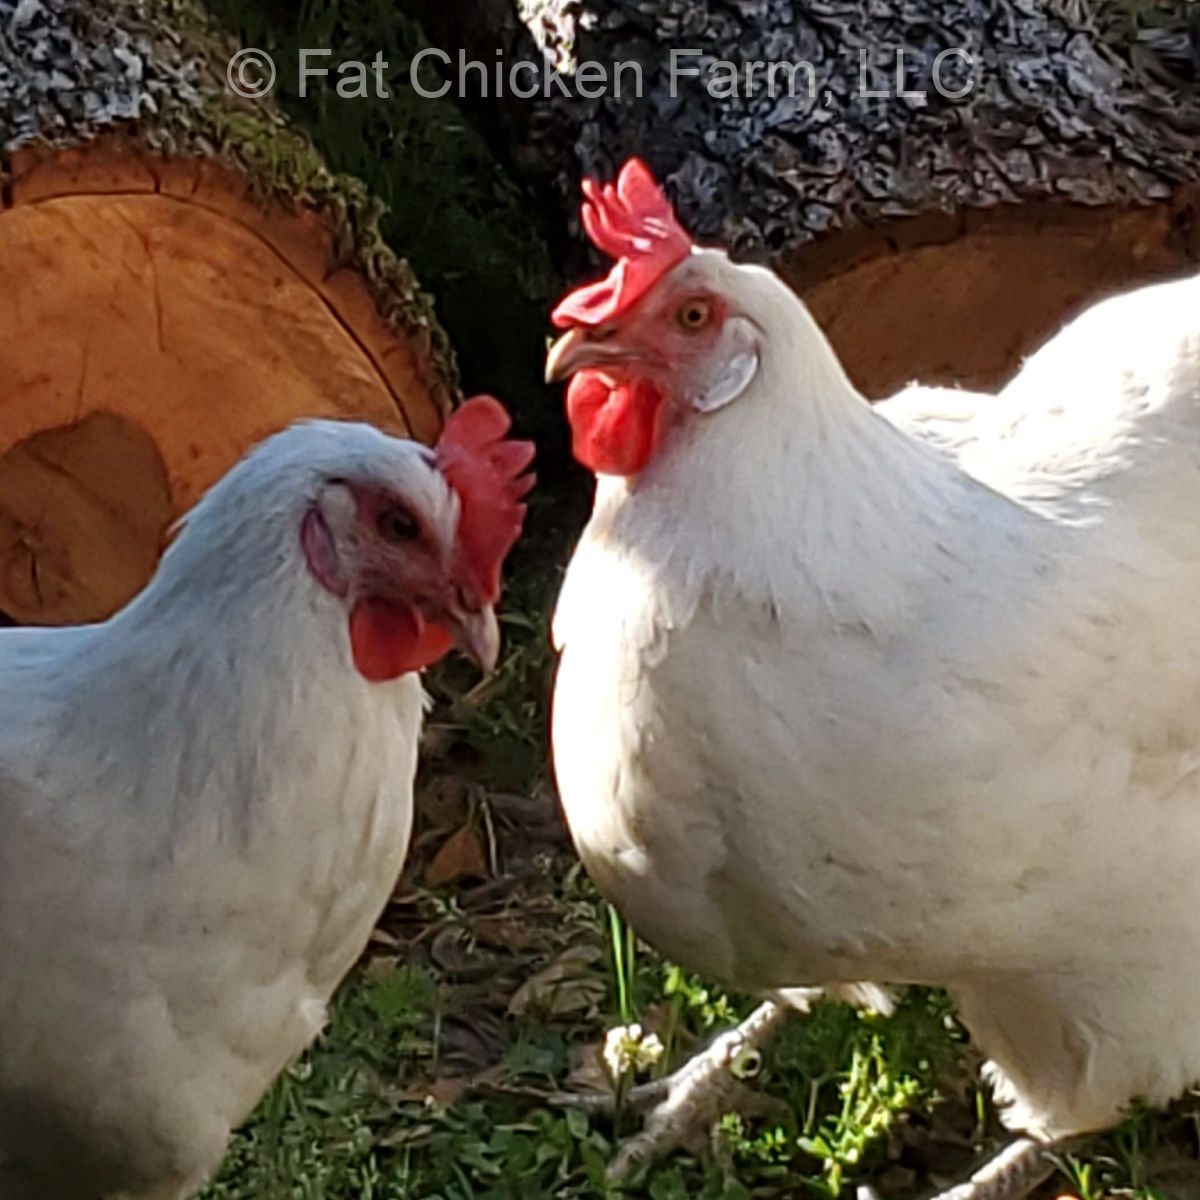 Lovely hens at Fat Chicken Farm in North Carolina.